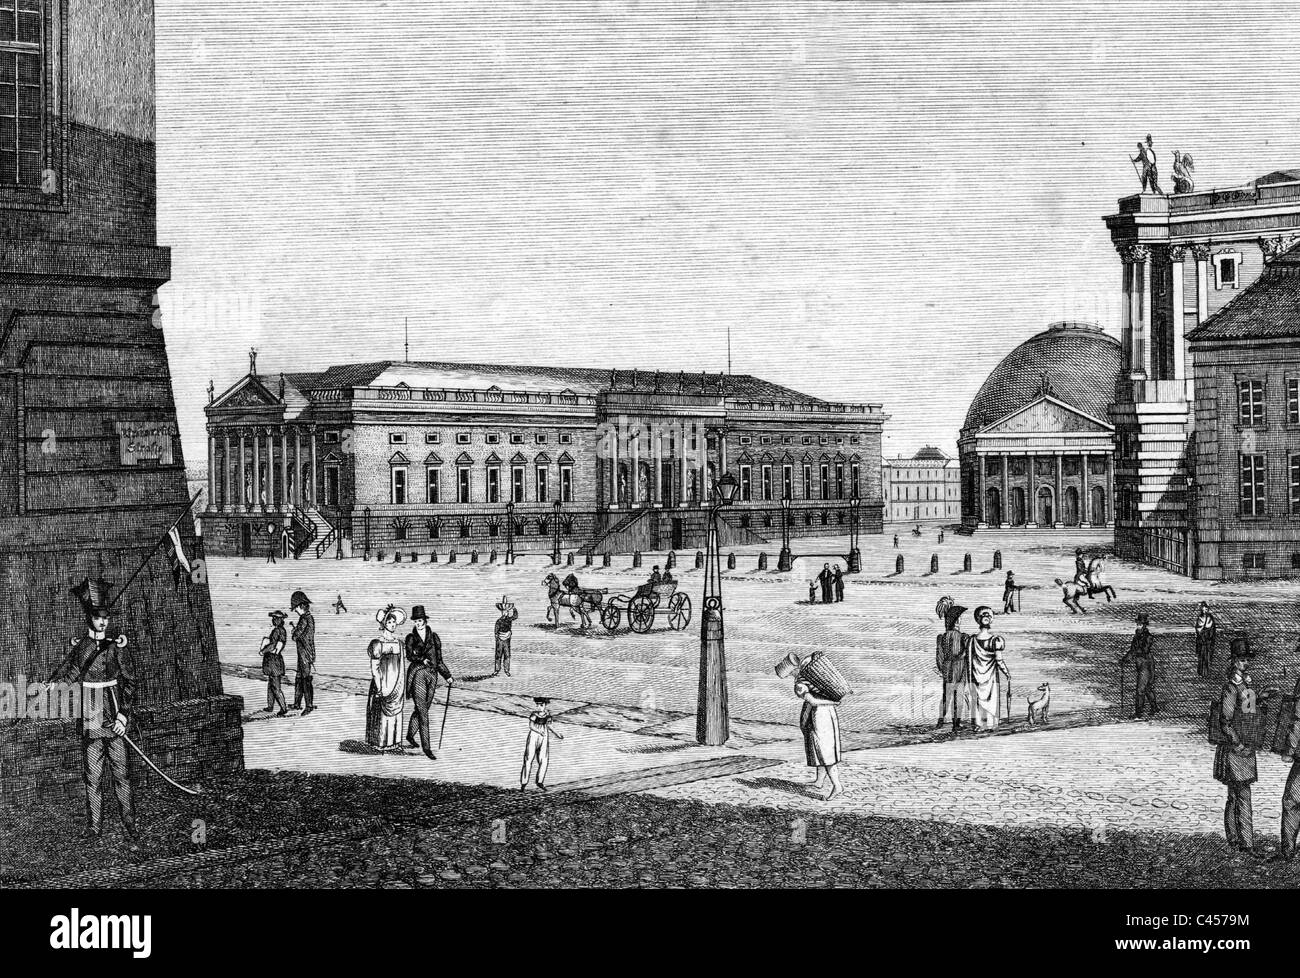 L'Opéra d'Etat de Berlin Unter den Linden au 19e siècle Banque D'Images